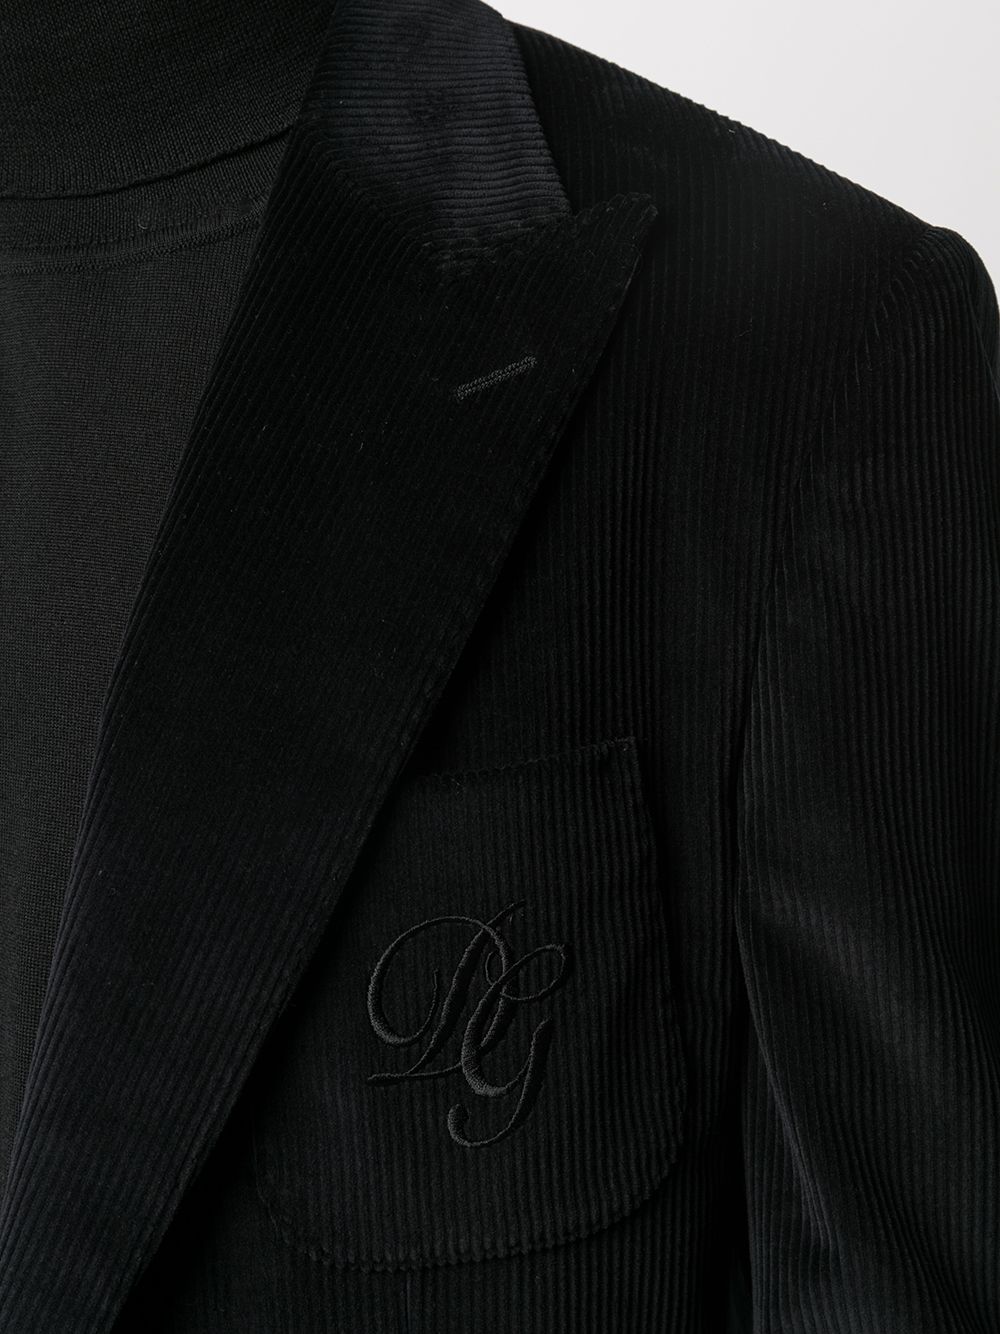 фото Dolce & gabbana вельветовый пиджак с вышитым логотипом